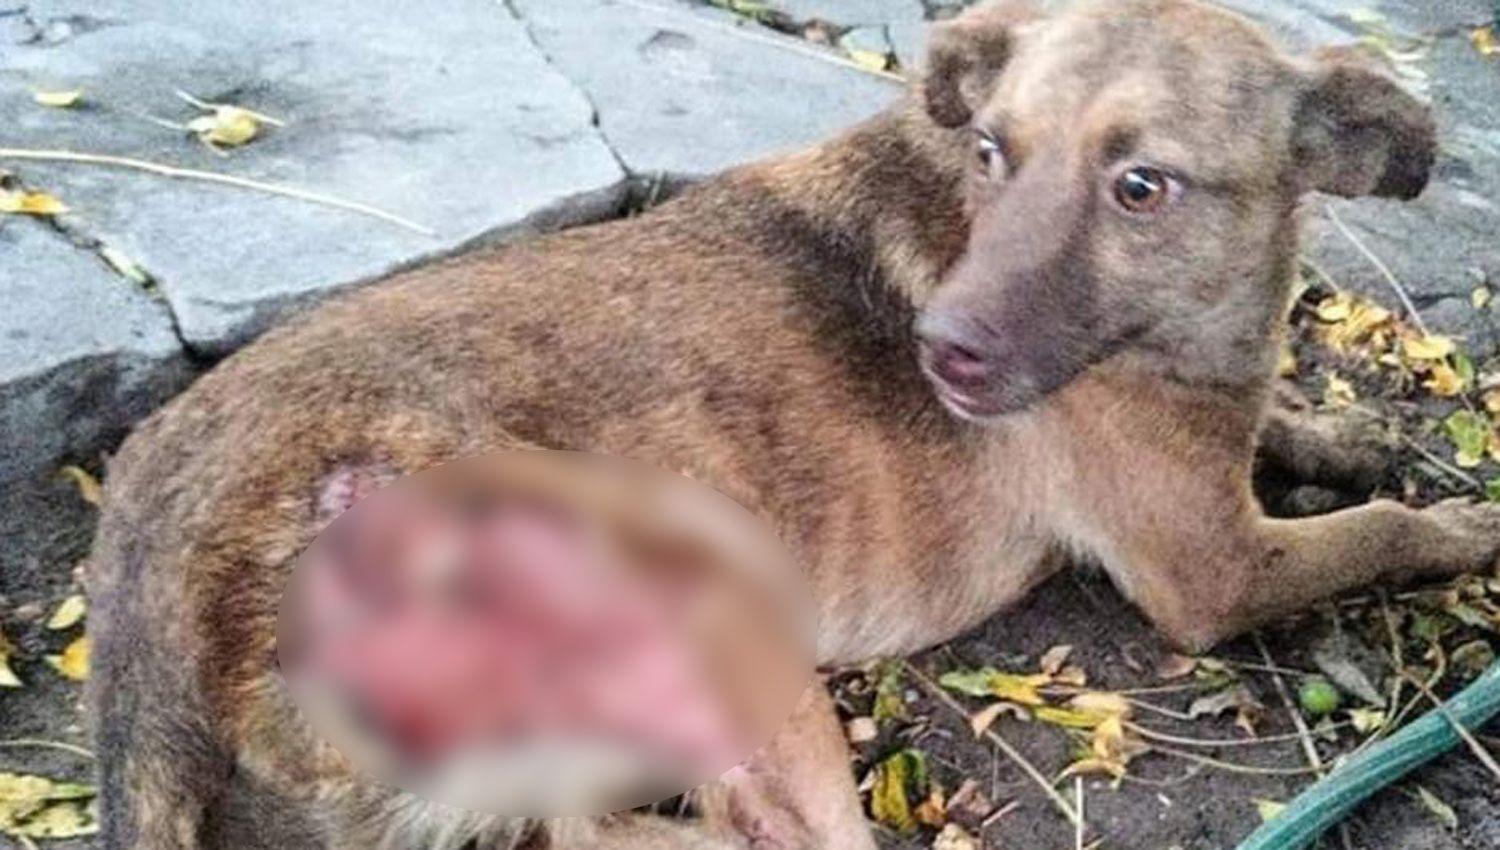 El animal tenía gravísimas lesiones en la parte trasera de su cuerpo
Fue asistido por un veterinario que le realizó las curaciones necesarias